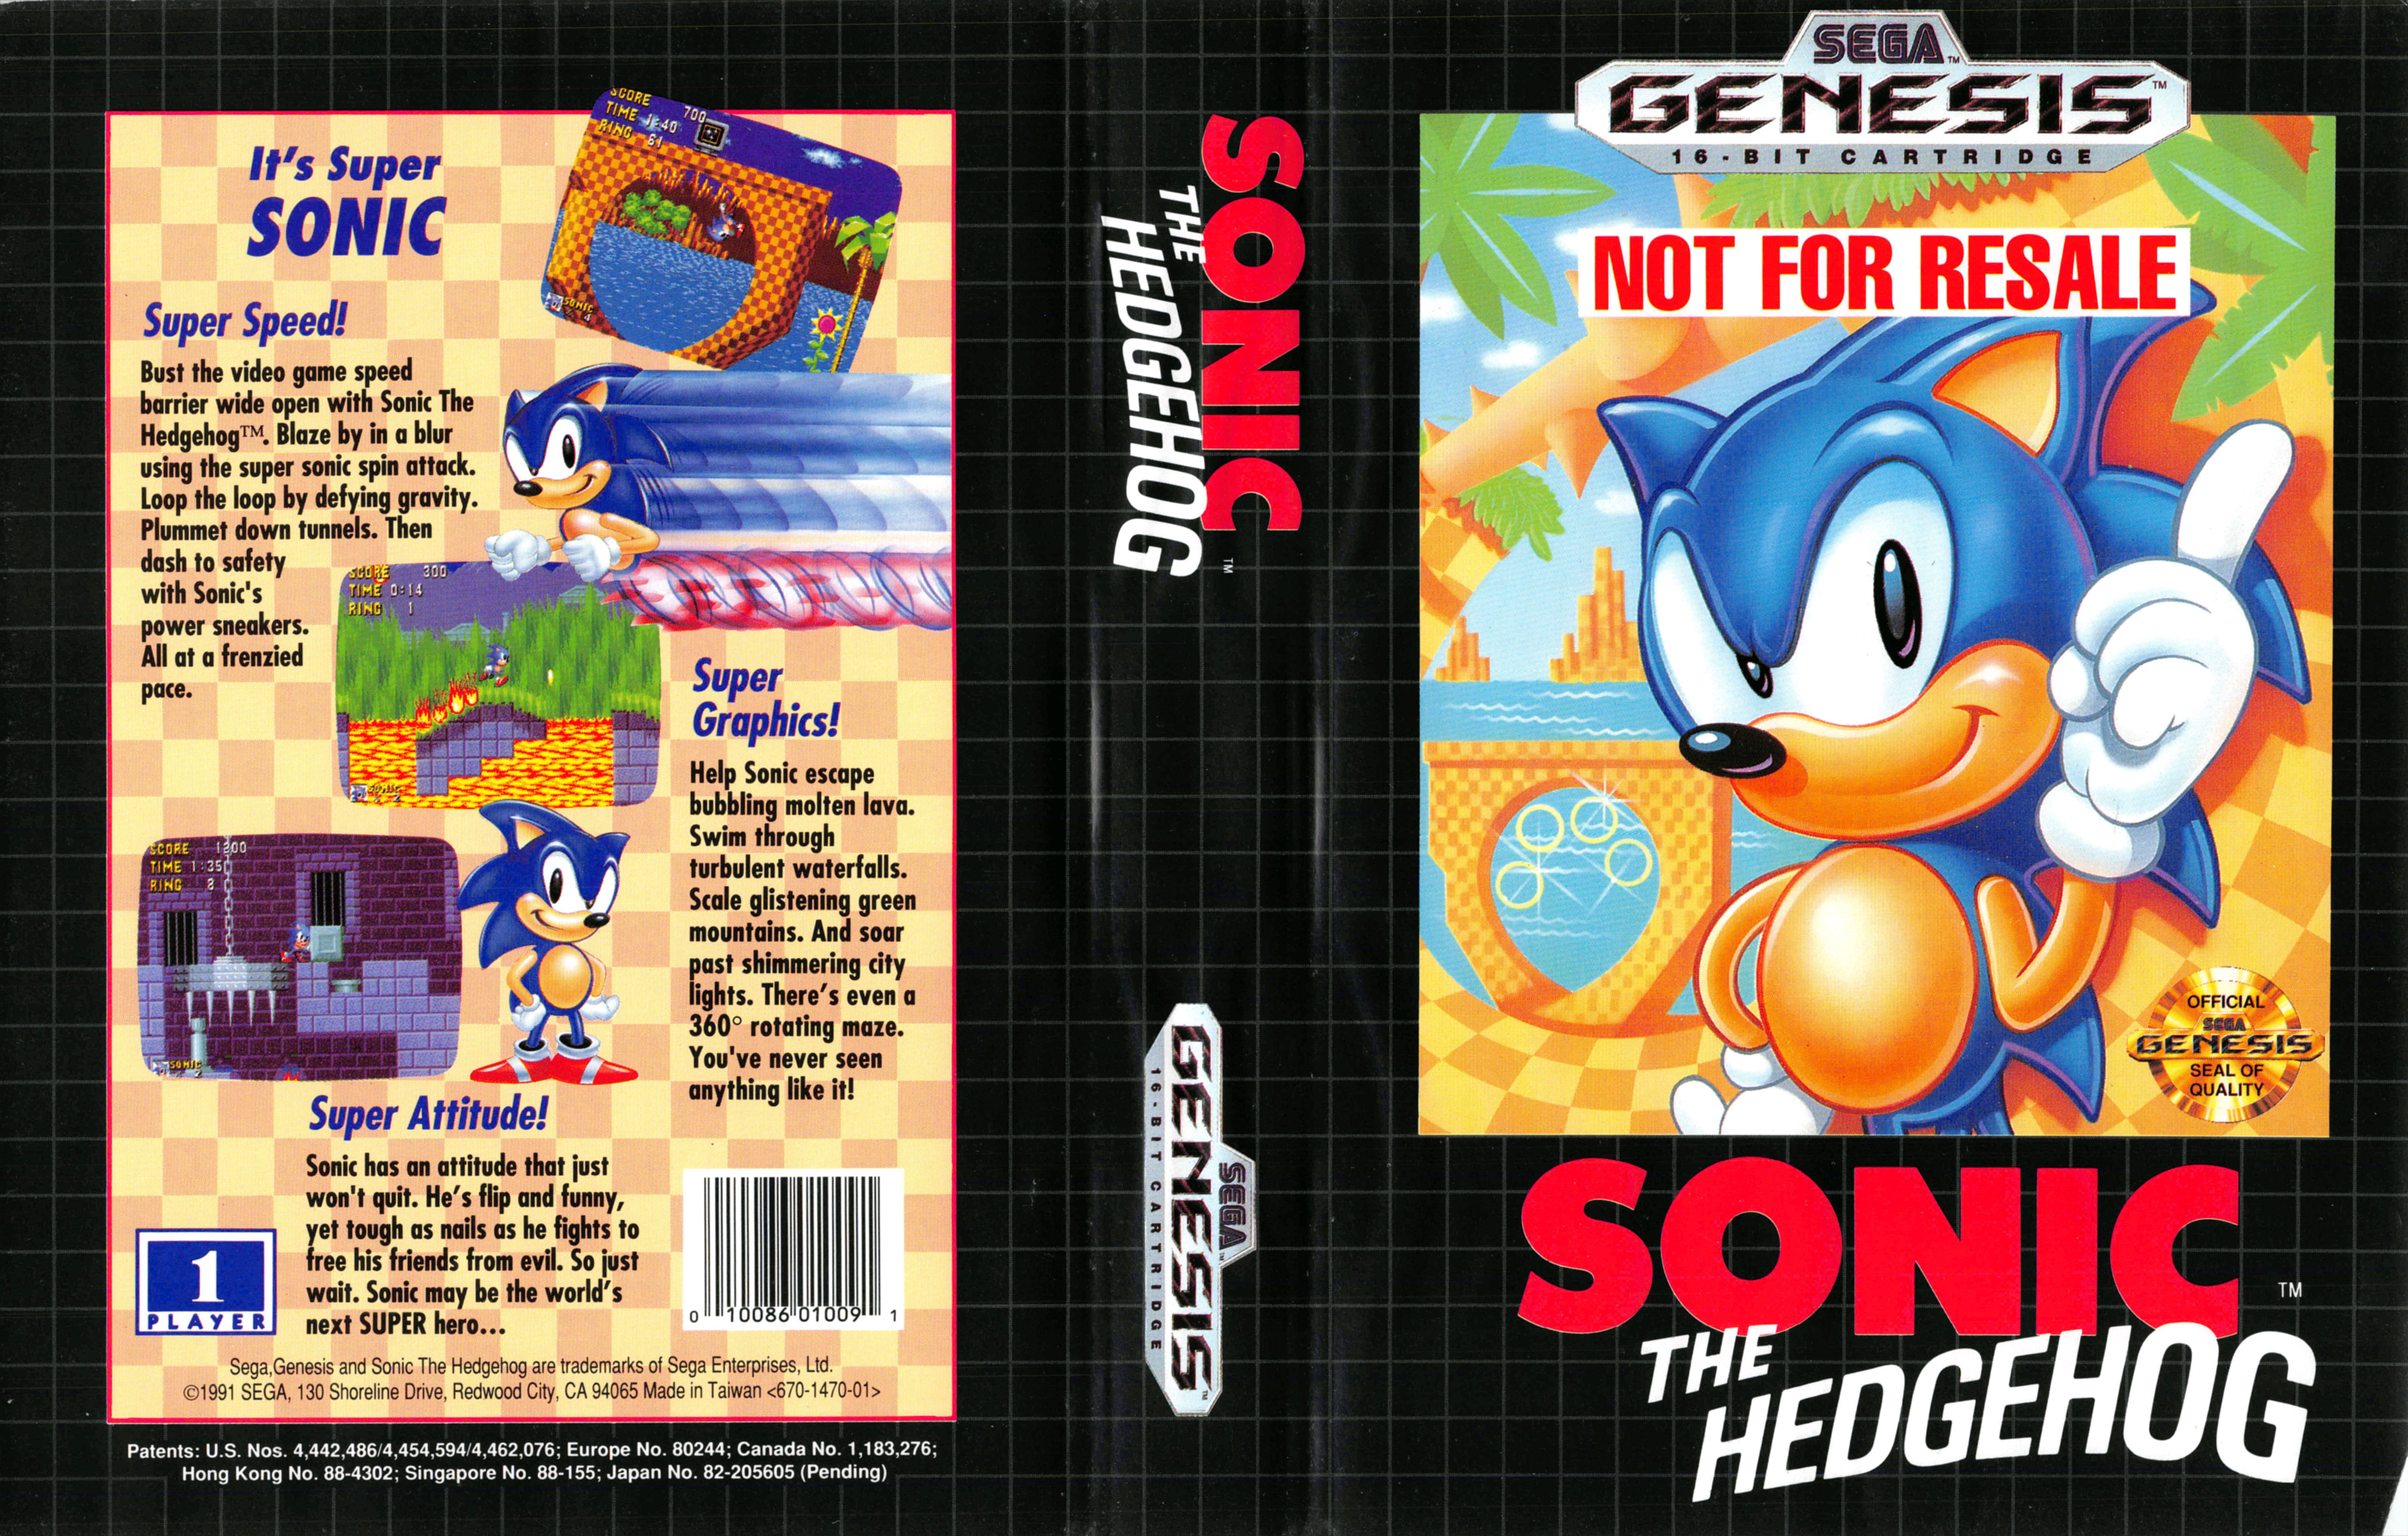 Супер сега игры. Sonic the Hedgehog первая игра. Соник игра сега. Sonic the Hedgehog 1991 Облокжа. Sonic the Hedgehog Sega Genesis обложка.